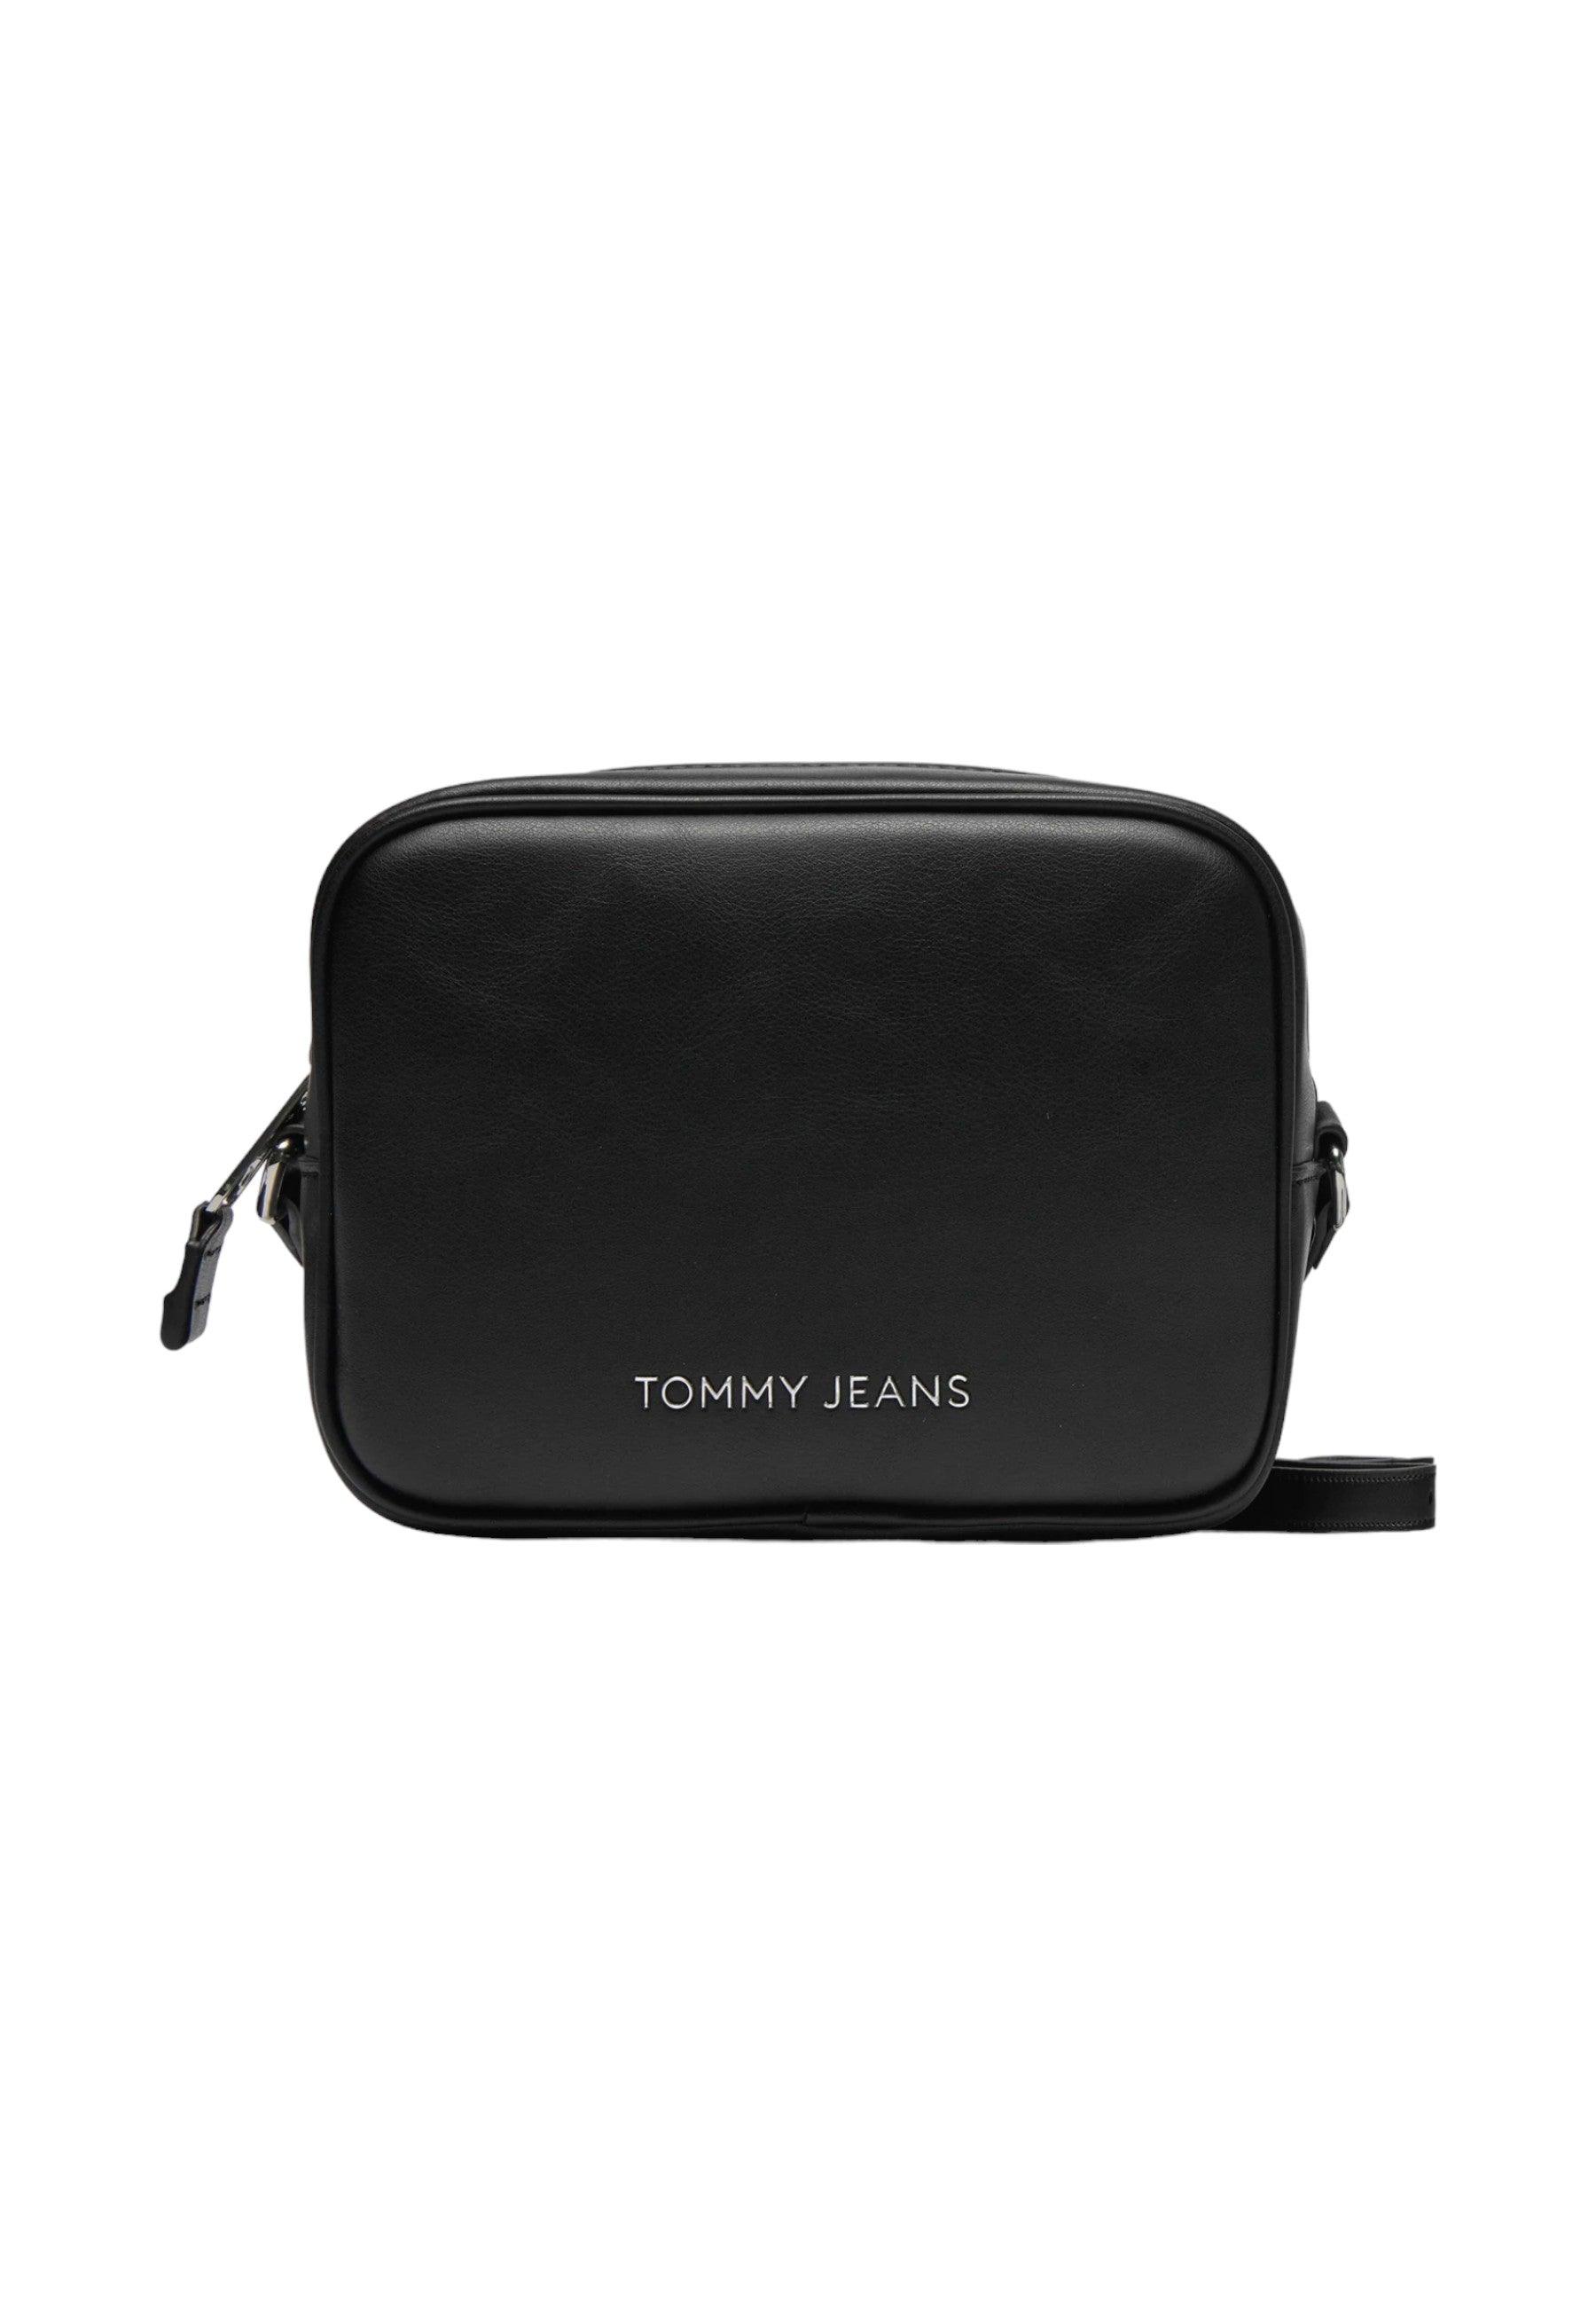 TOMMY HILFIGER Camera Bag Borsa Tracolla Donna Black AW0AW15828 - Sandrini Calzature e Abbigliamento